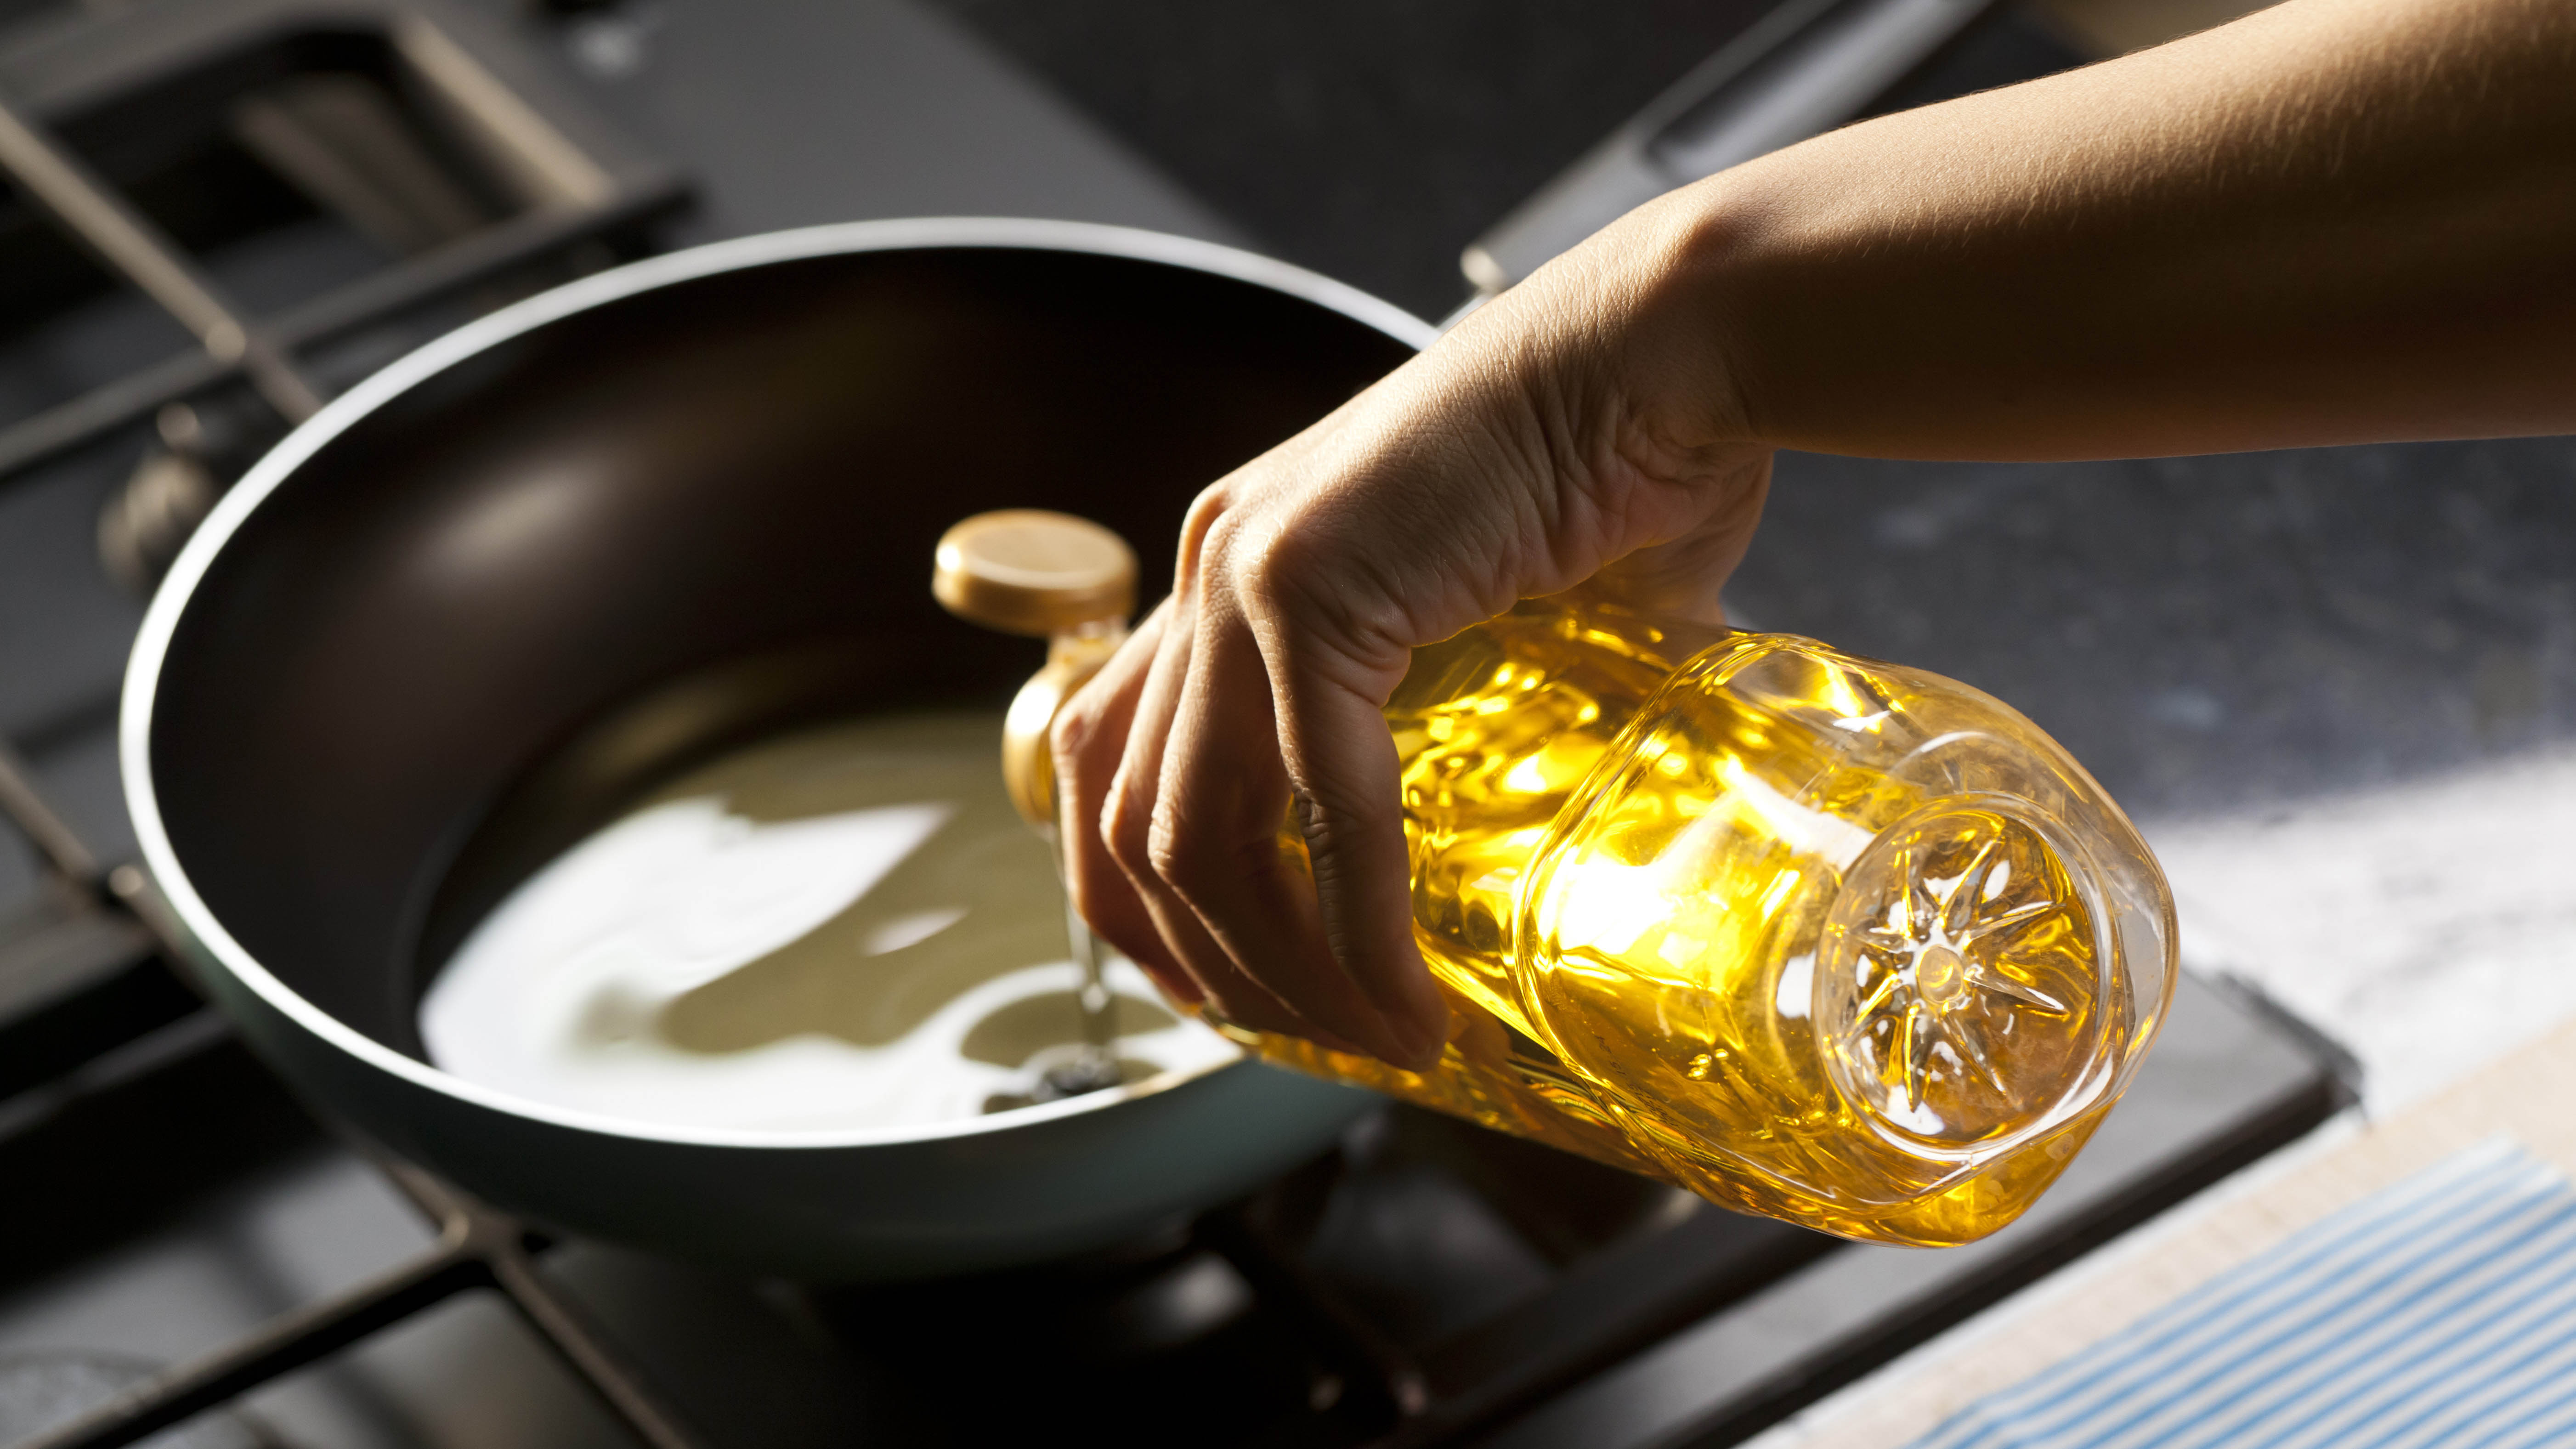 Масло выливается в сковороду для приготовления пищи